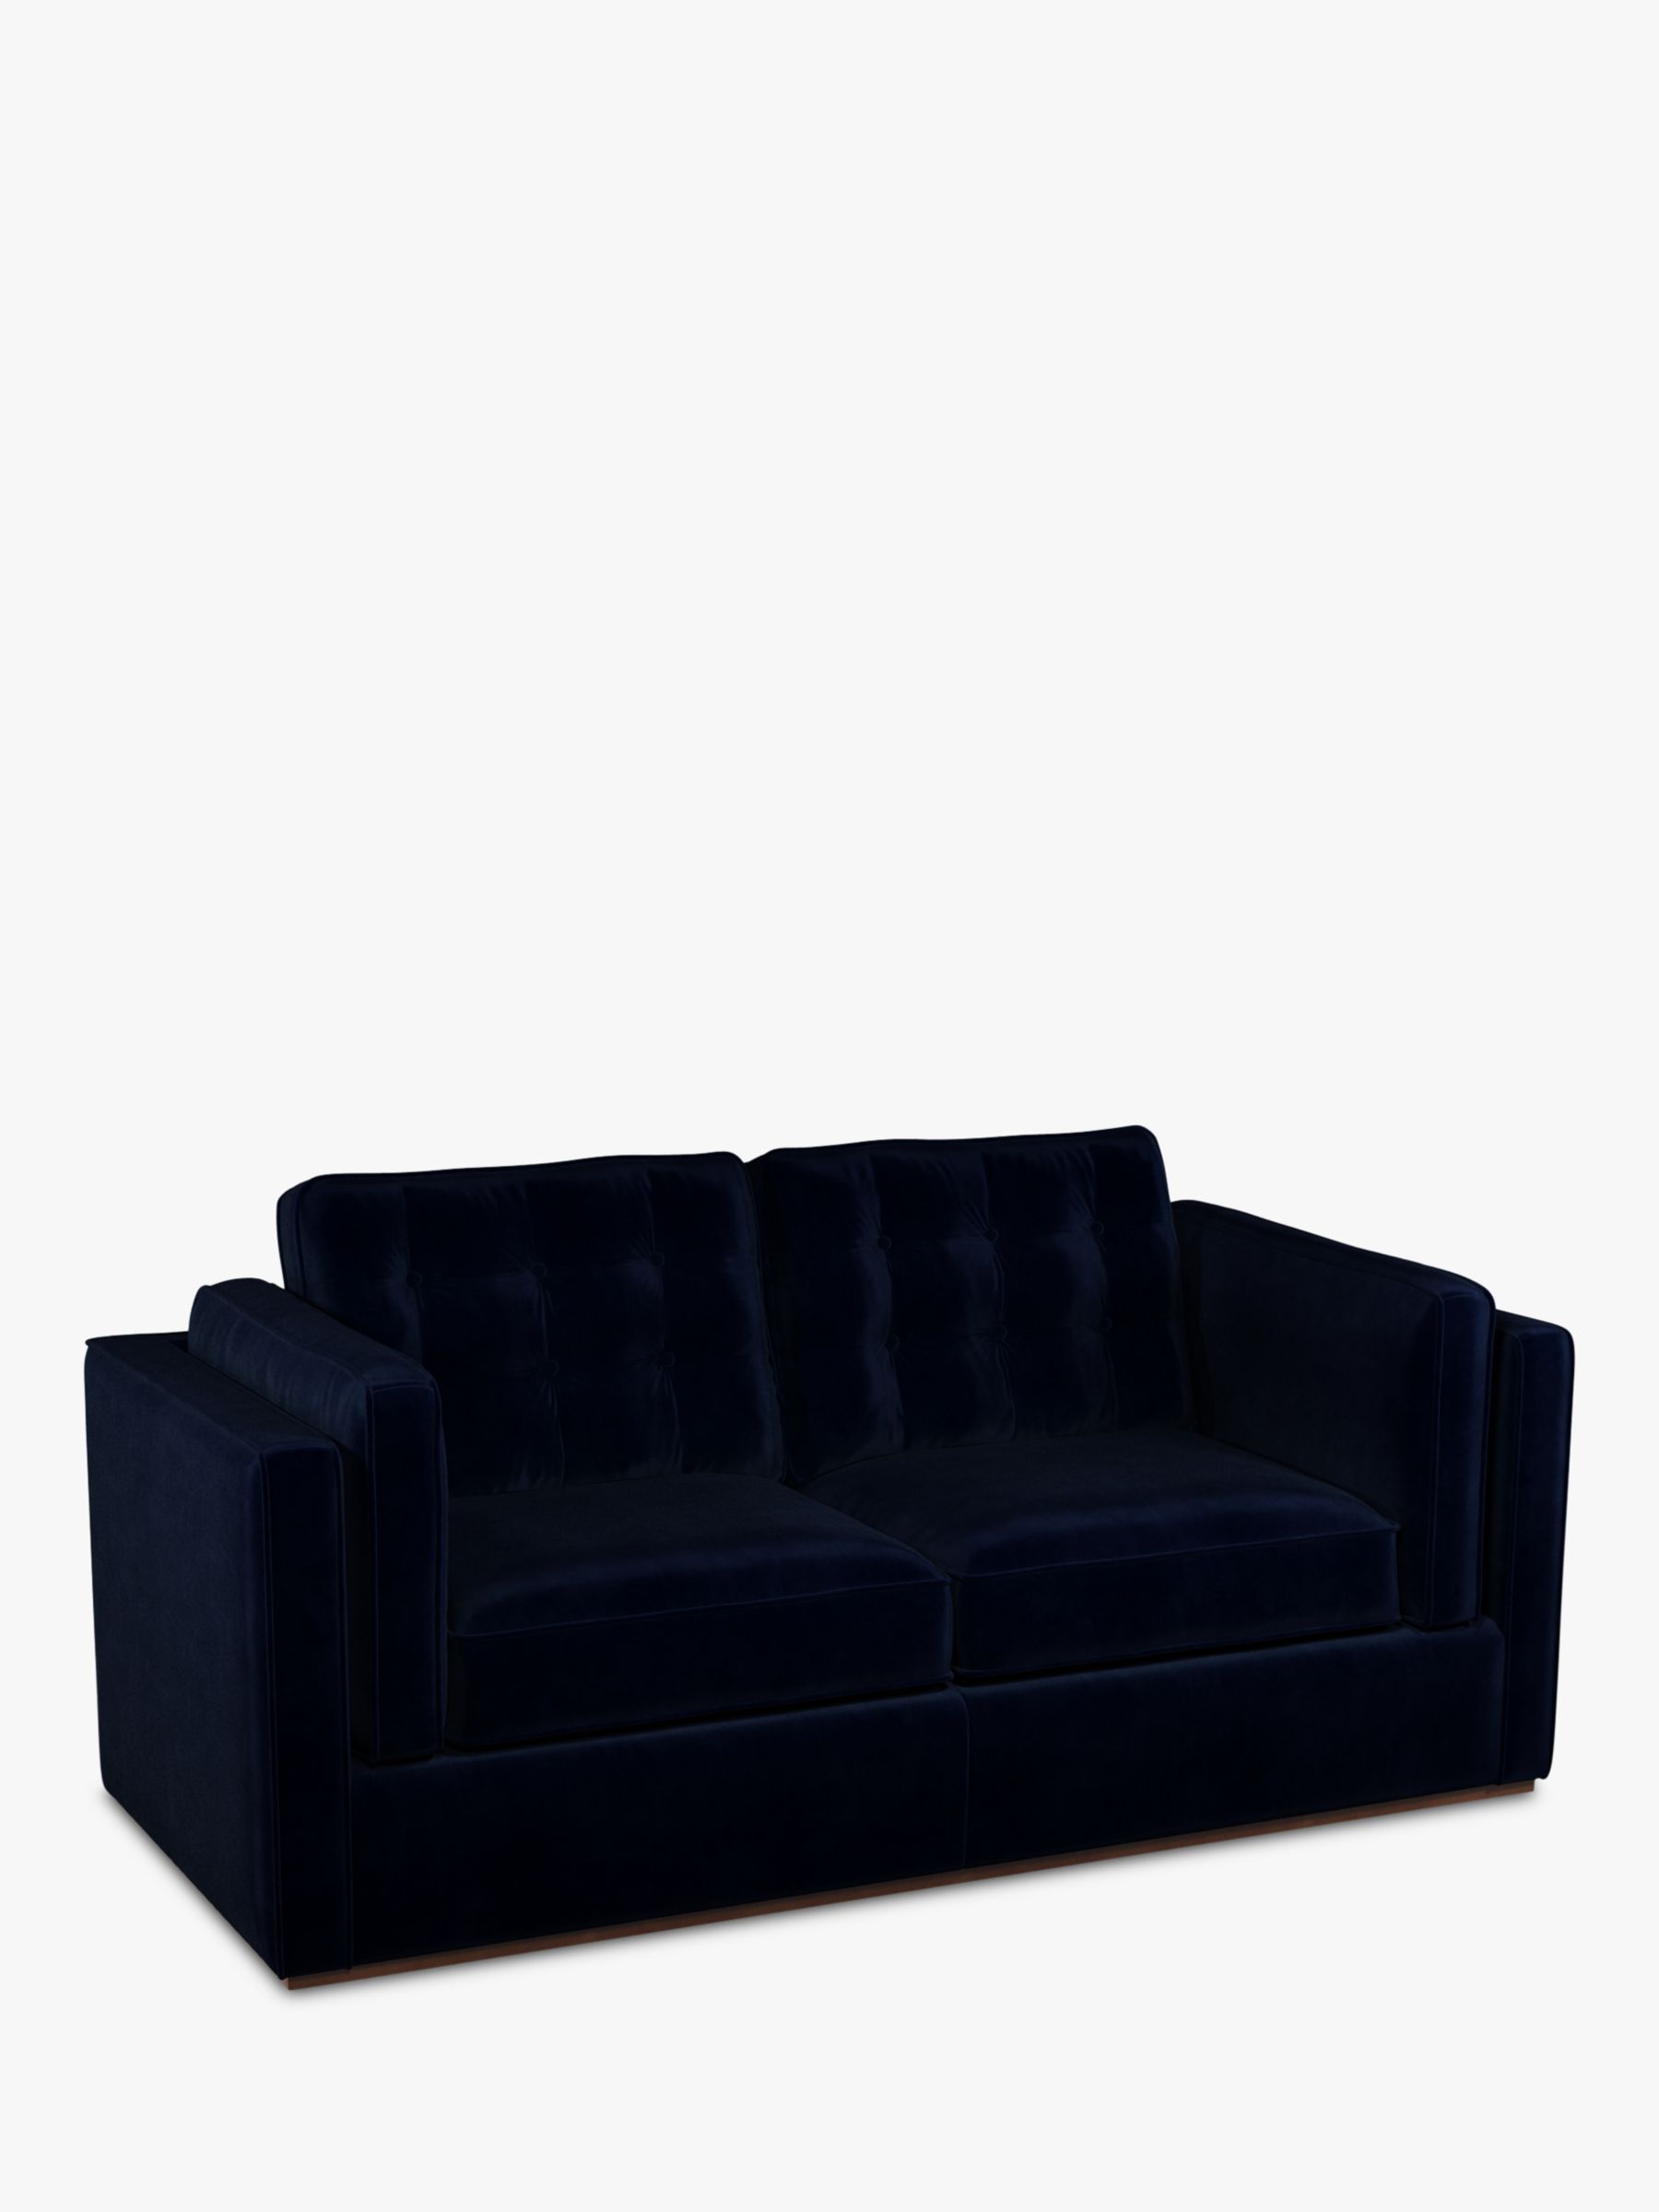 John Lewis + Swoon Lyon Medium 2 Seater Sofa Bed